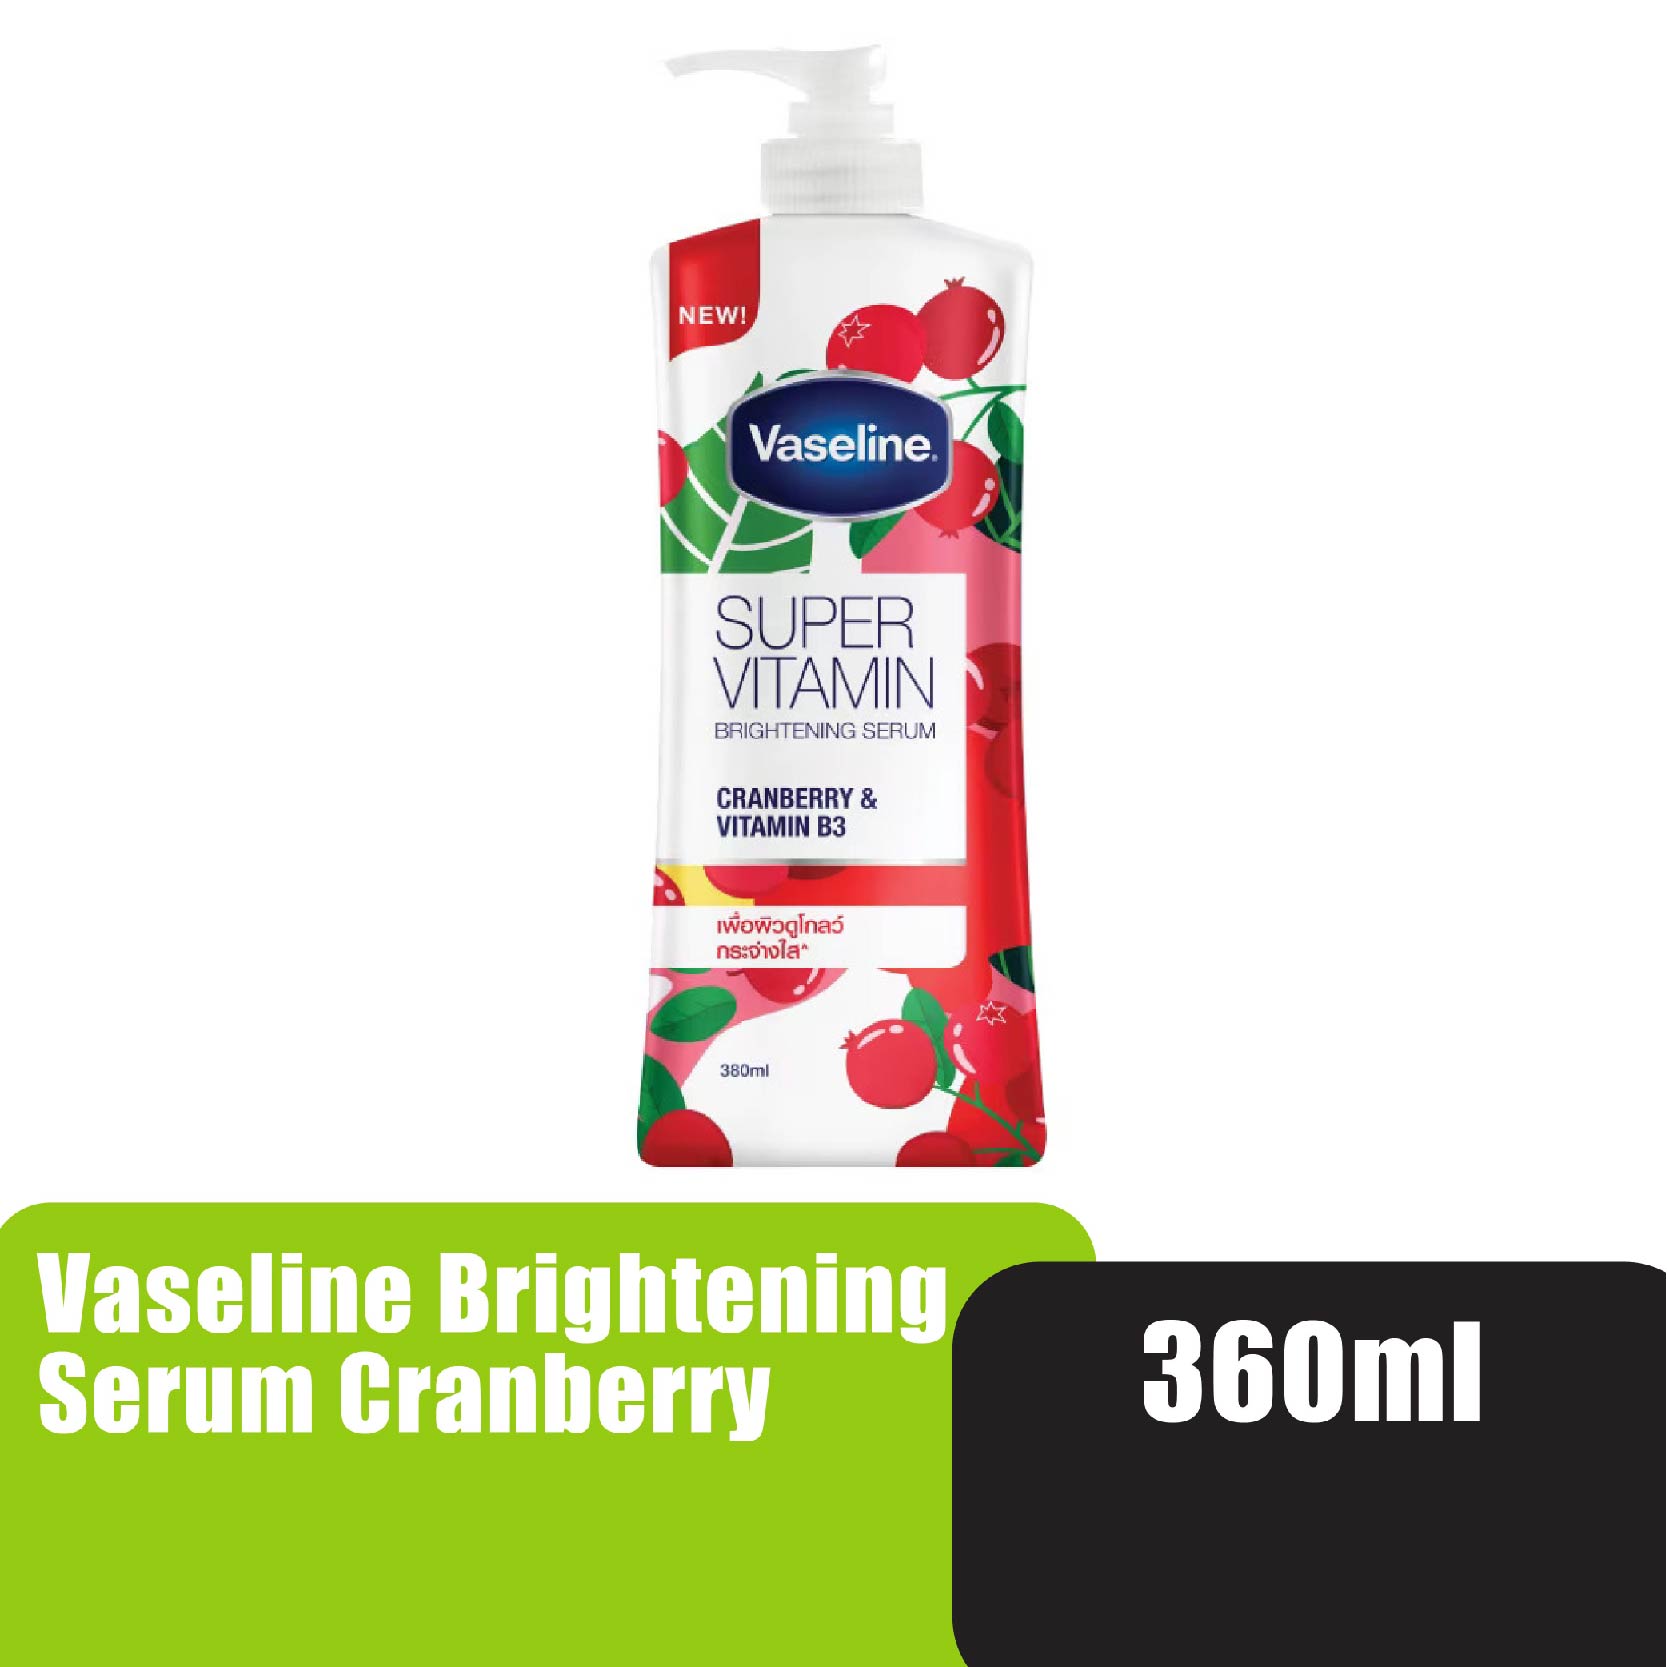 Vaseline Super Vitamin Brightening Serum 360ml - Cranberry